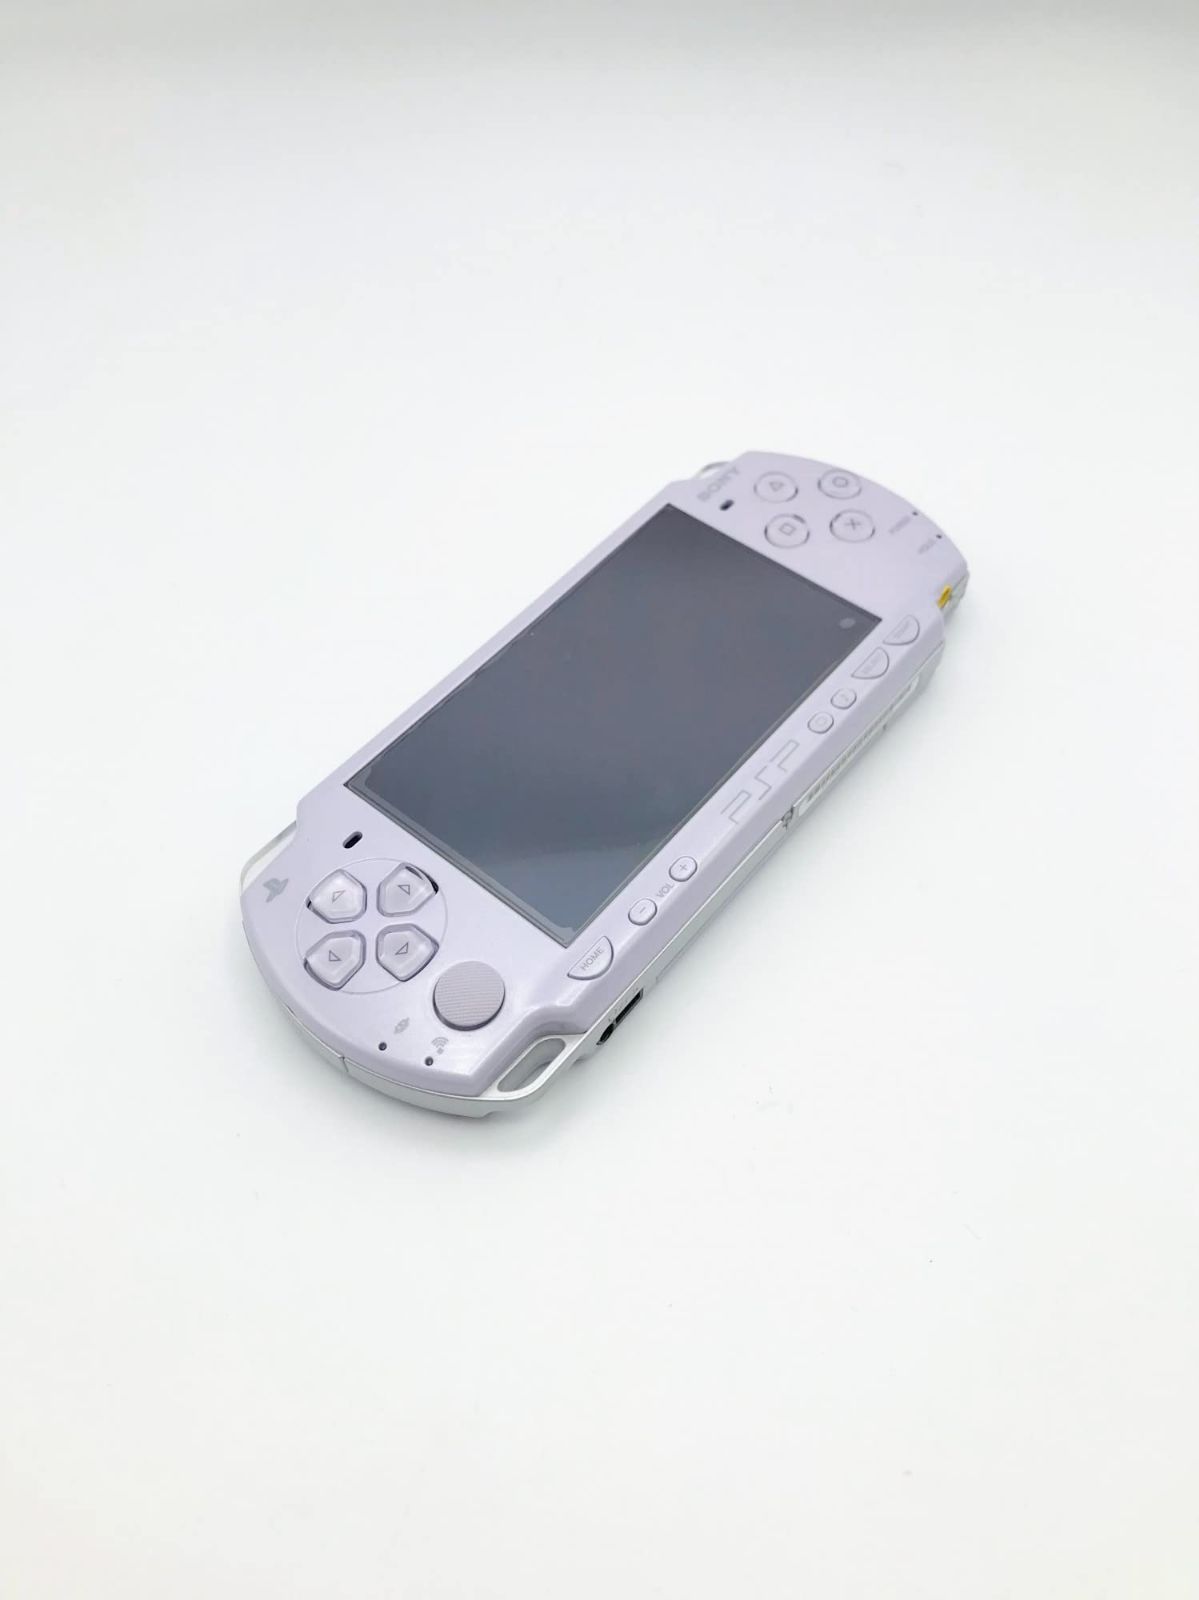 PSP「プレイステーション・ポータブル」 ラベンダー・パープル (PSP